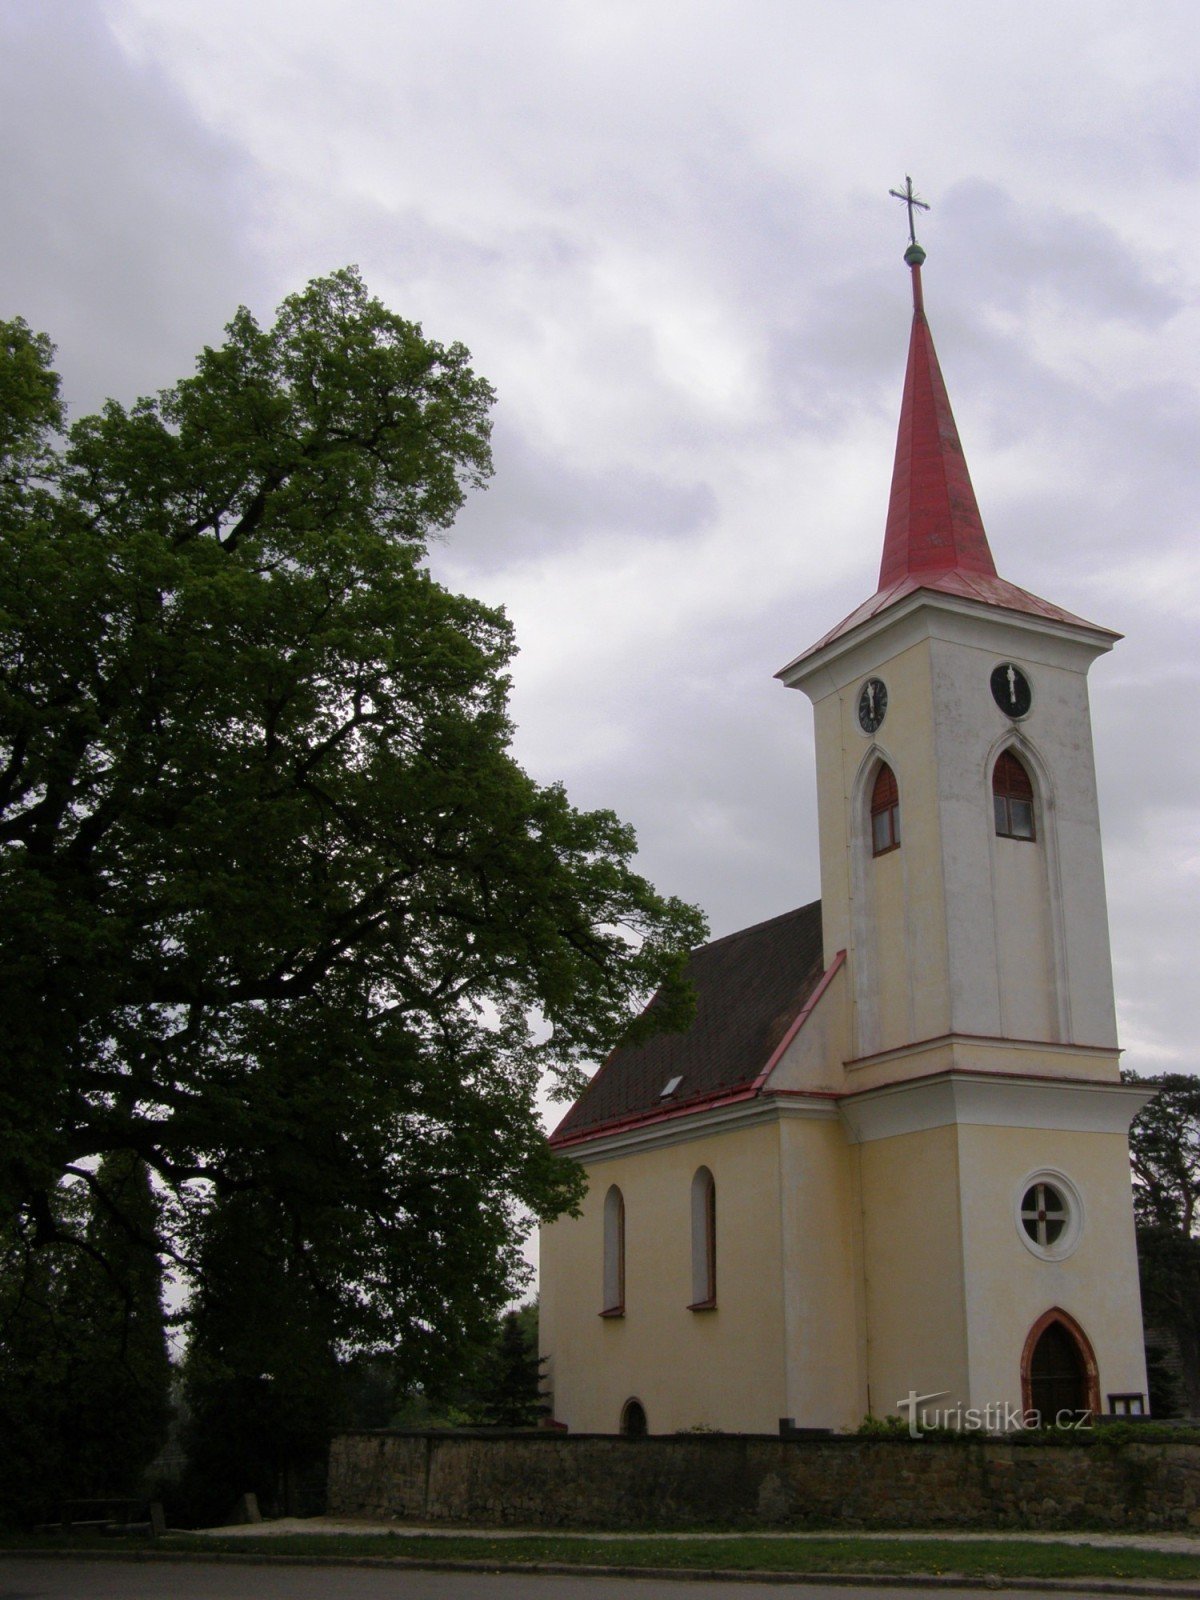 Velichovky - Az Úr színeváltozásának temploma